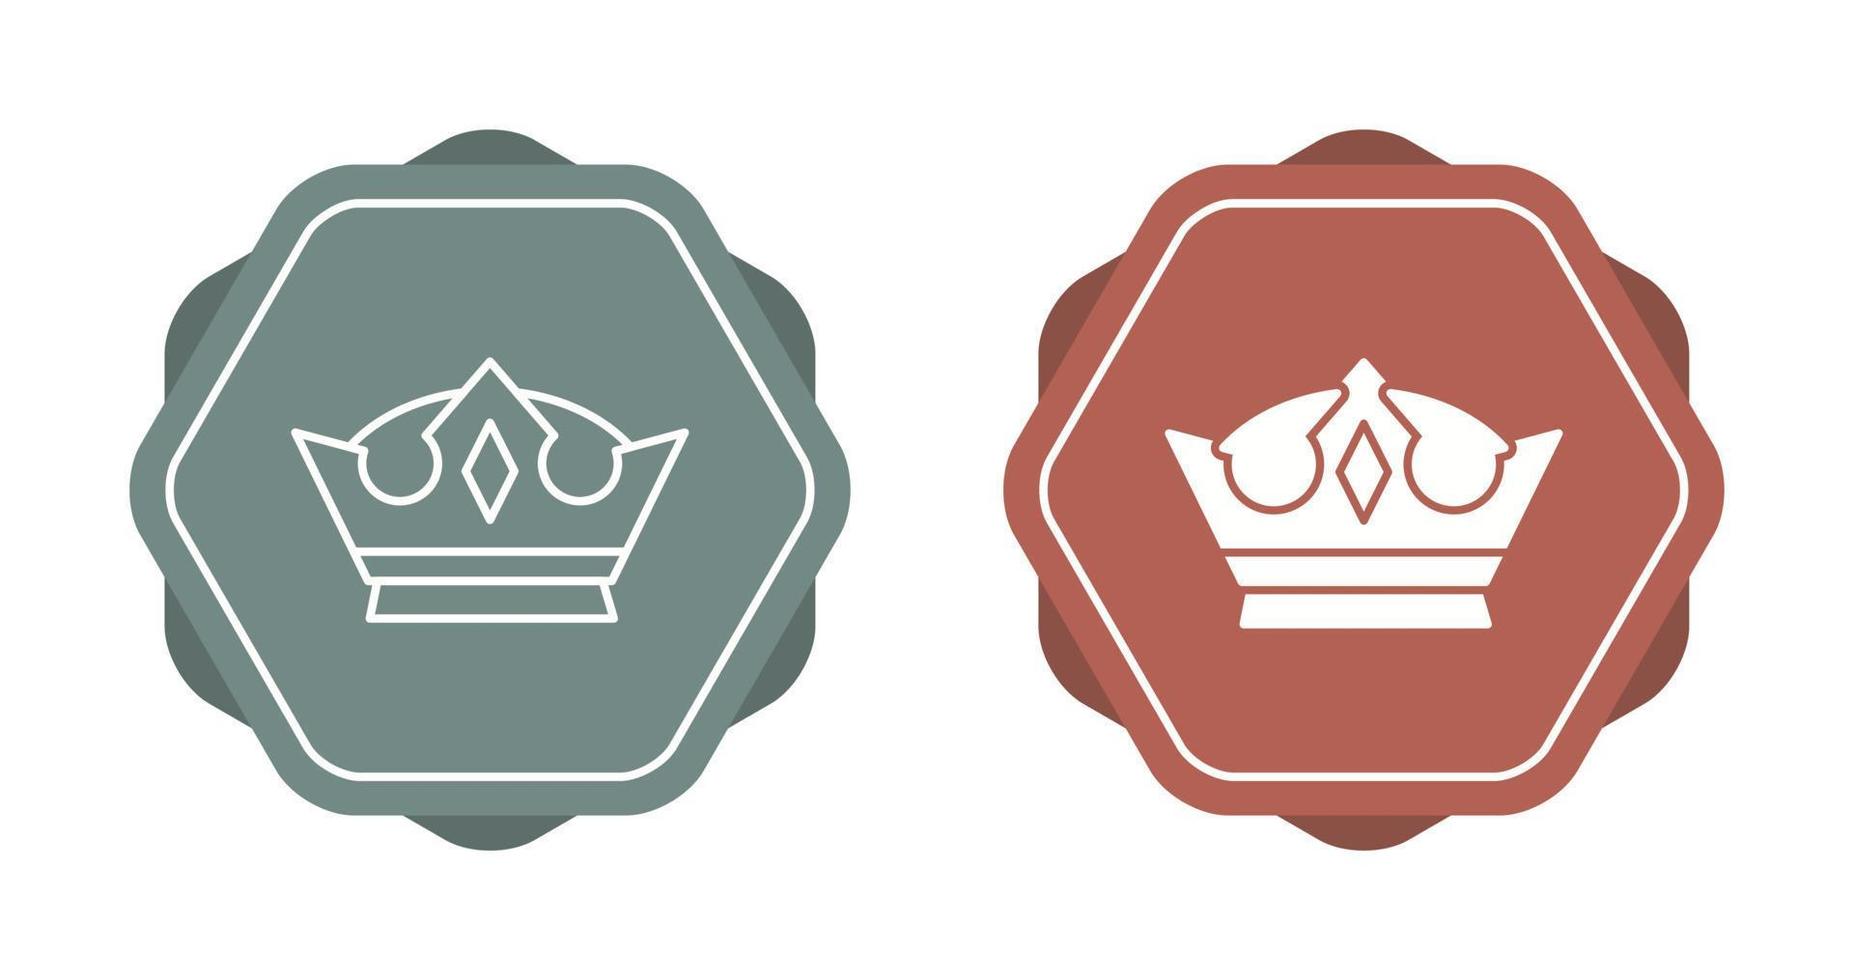 ícone de vetor de coroa